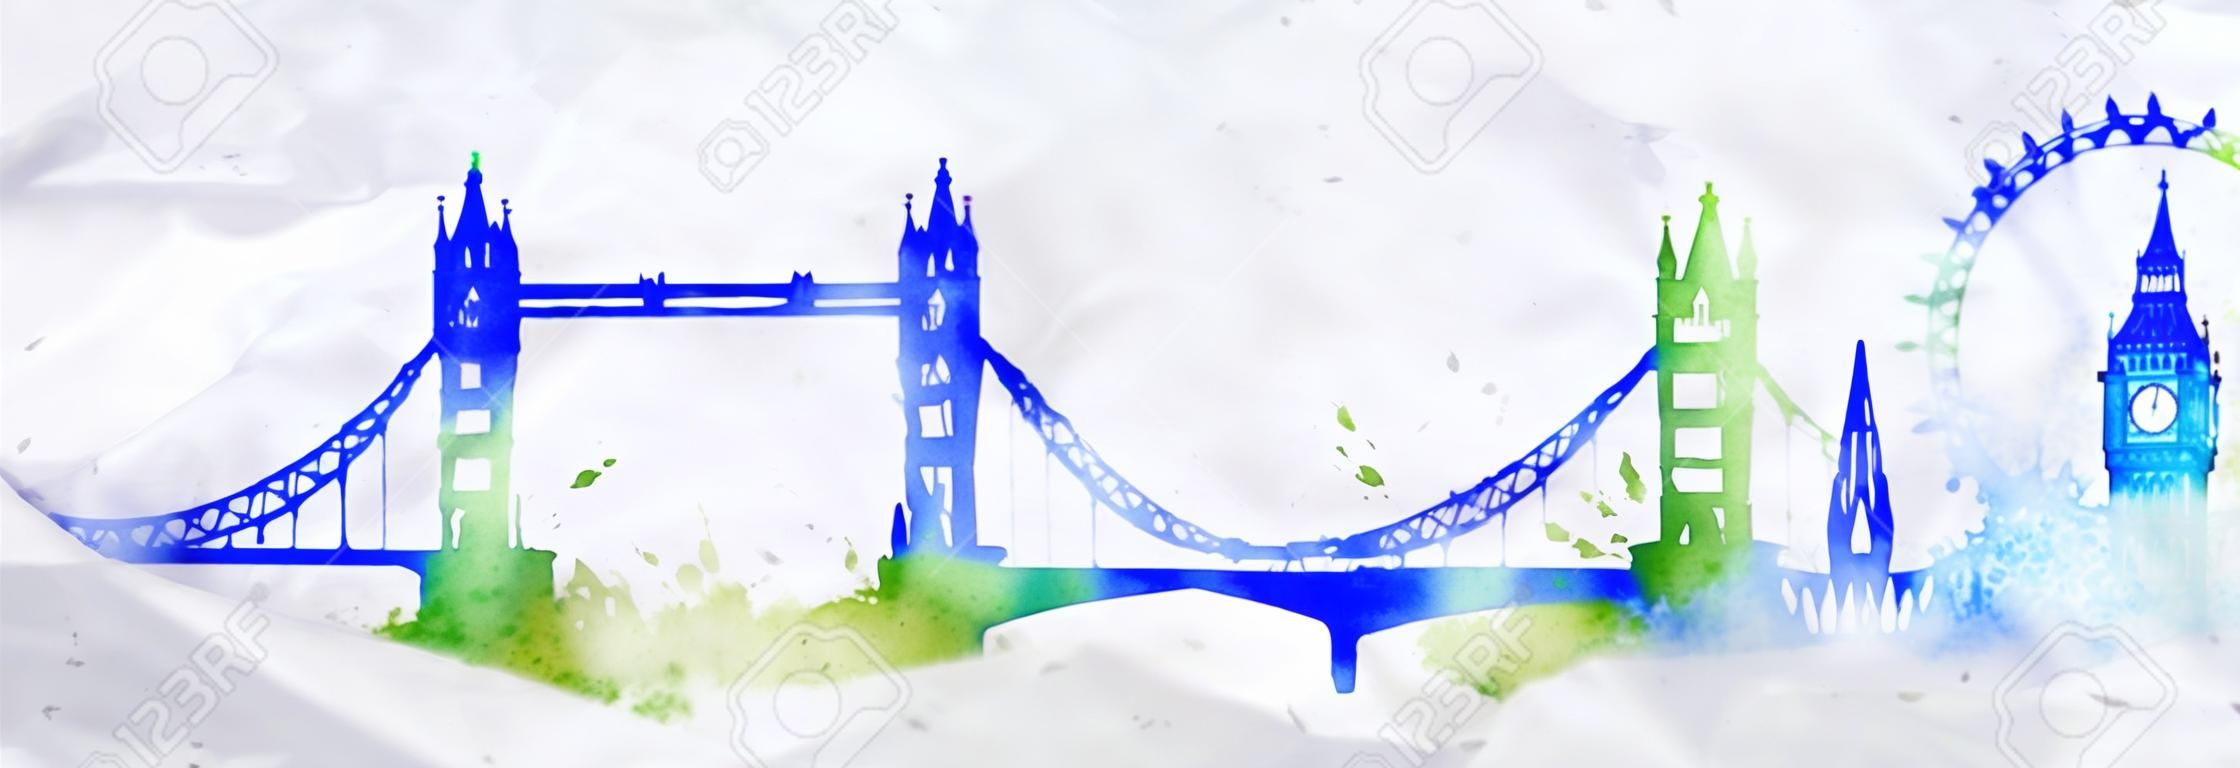 Schattenbild der London-Stadt mit Spritzern von Aquarell gemalt fällt Streifen Sehenswürdigkeiten mit einem blau-grünen Farben